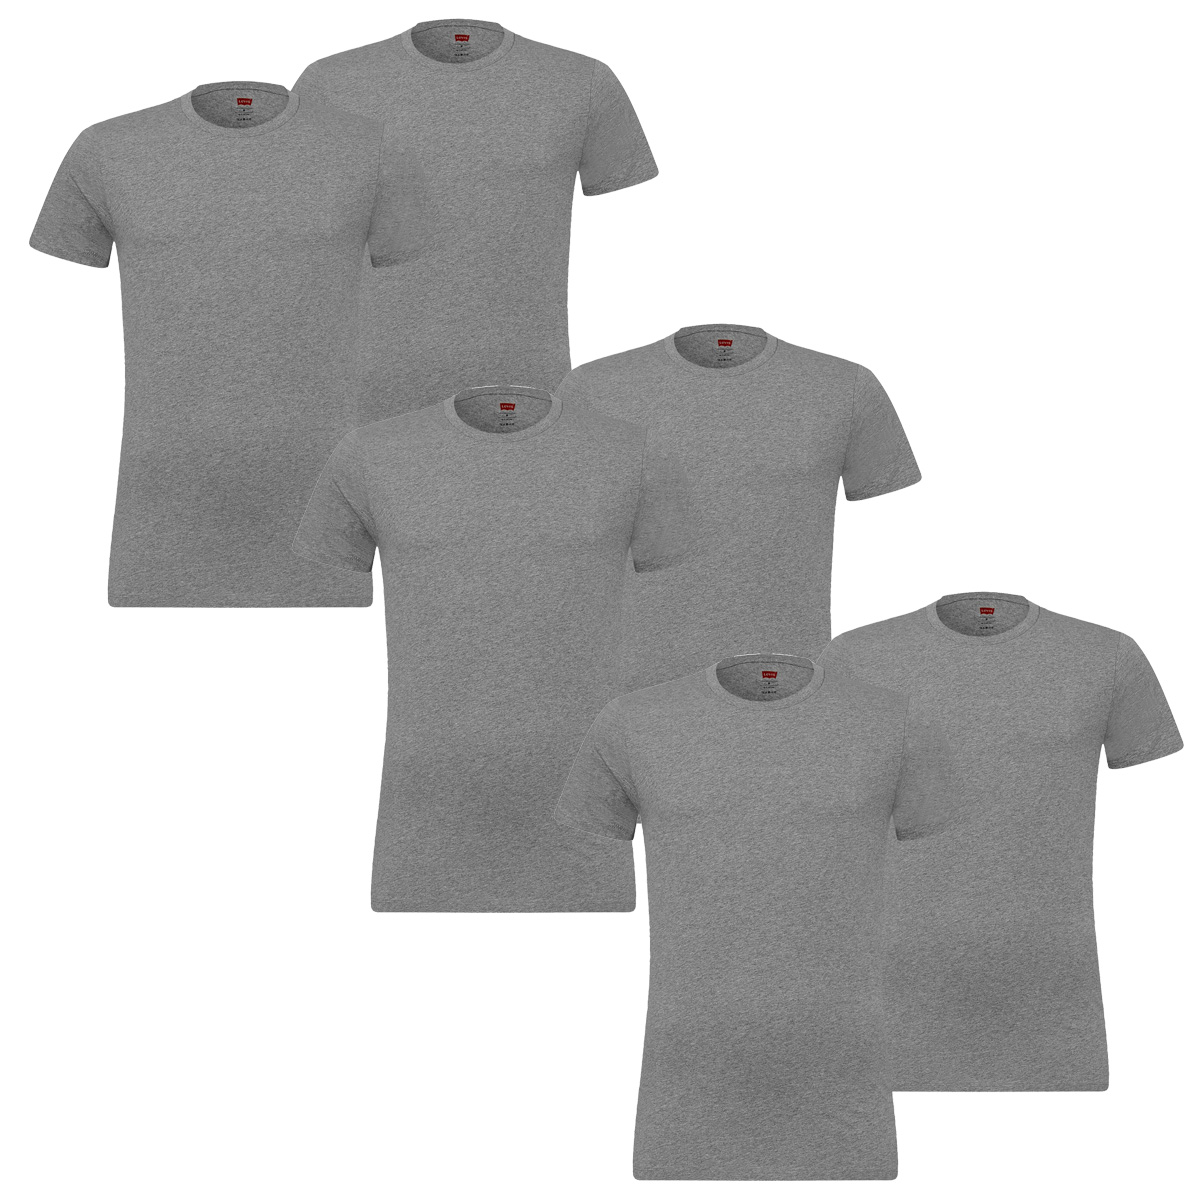 6er Pack Levis Solid Crew T-Shirt Men Herren Unterhemd Rundhals Stretch Cotton